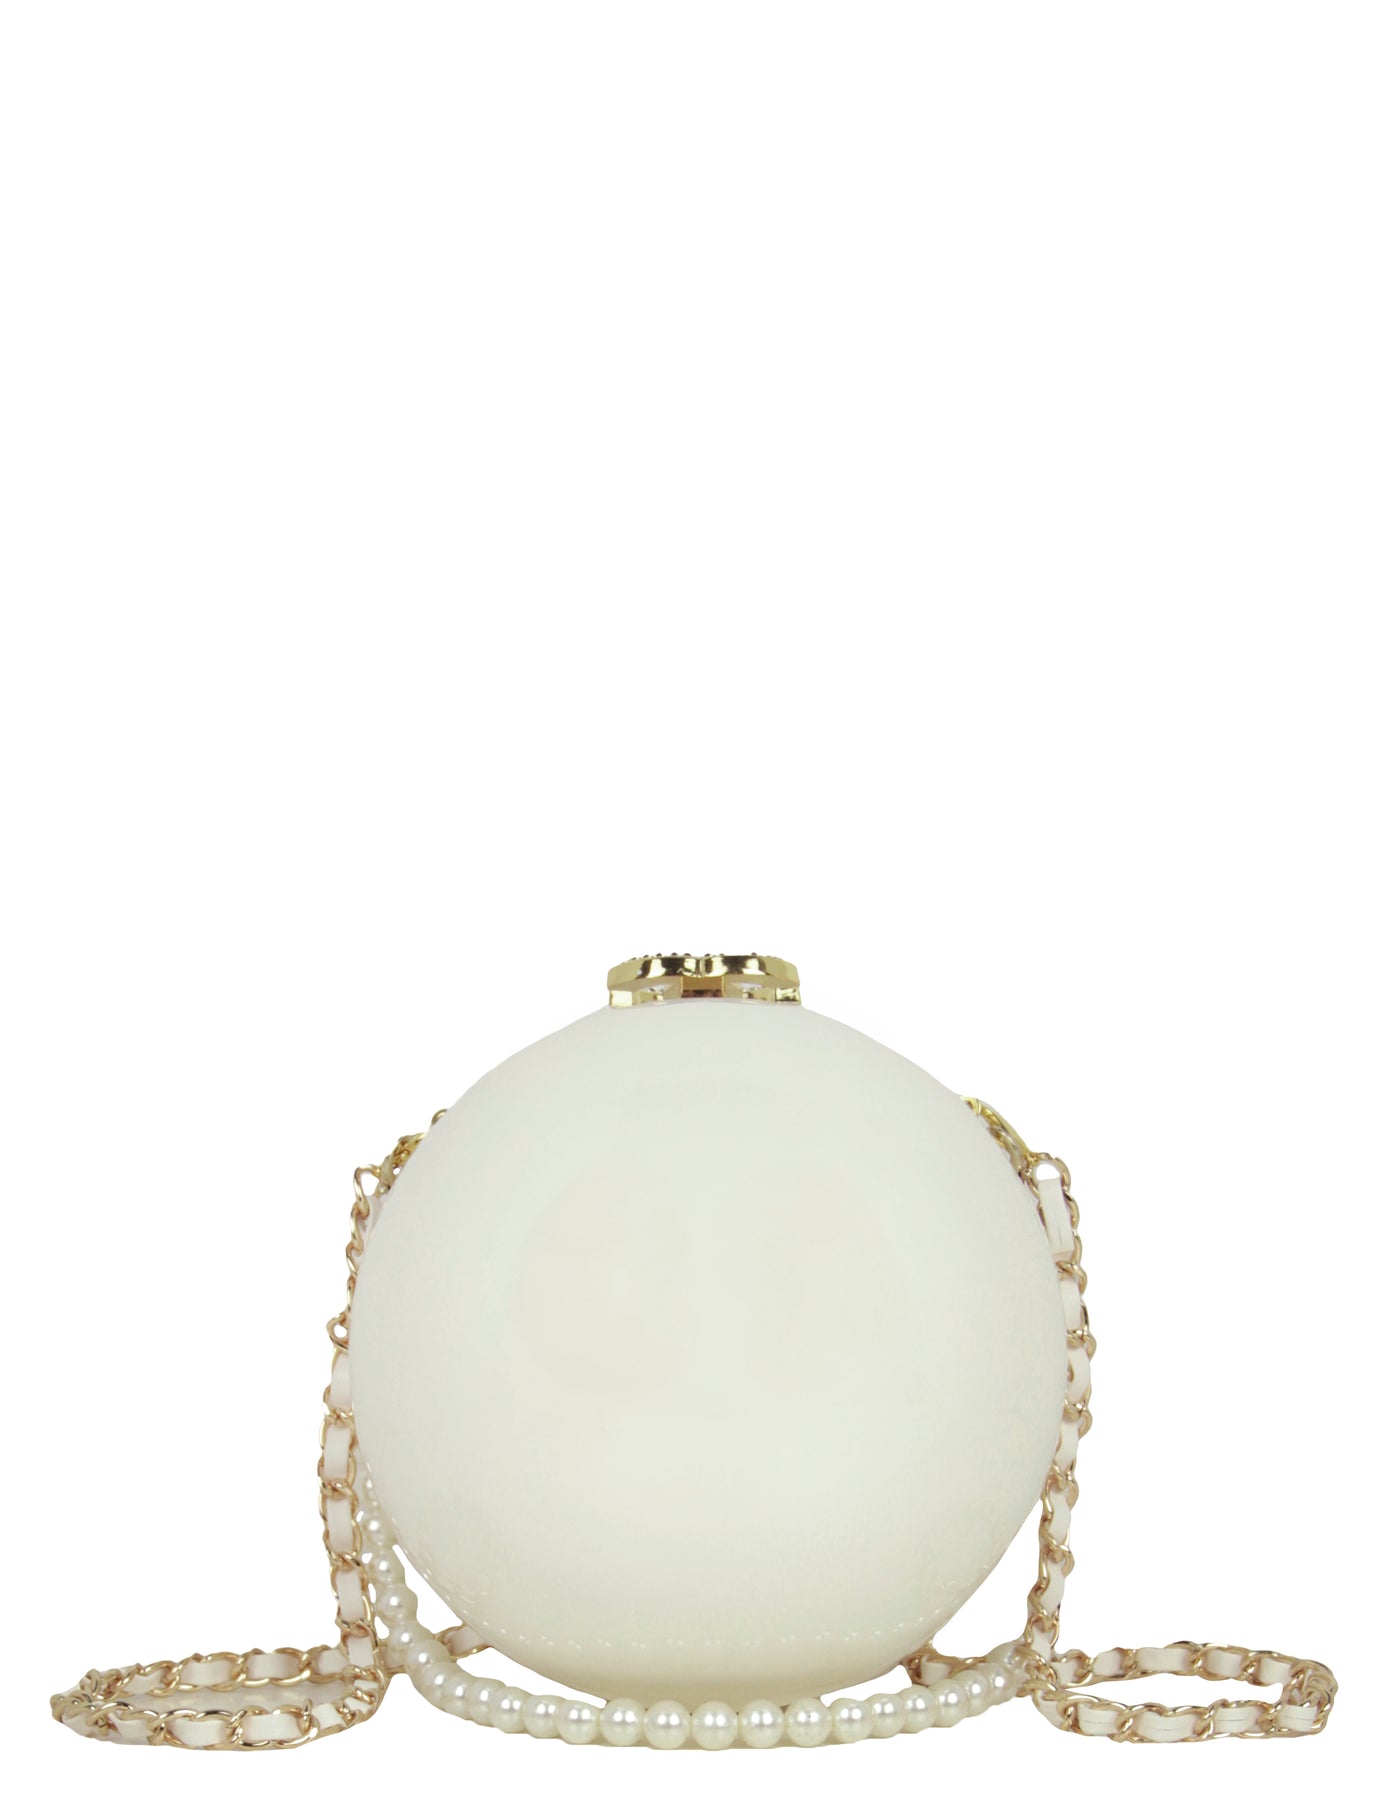 Limited Edition Chanel Gold Ball 2016 Dubai VIP Gift Bag